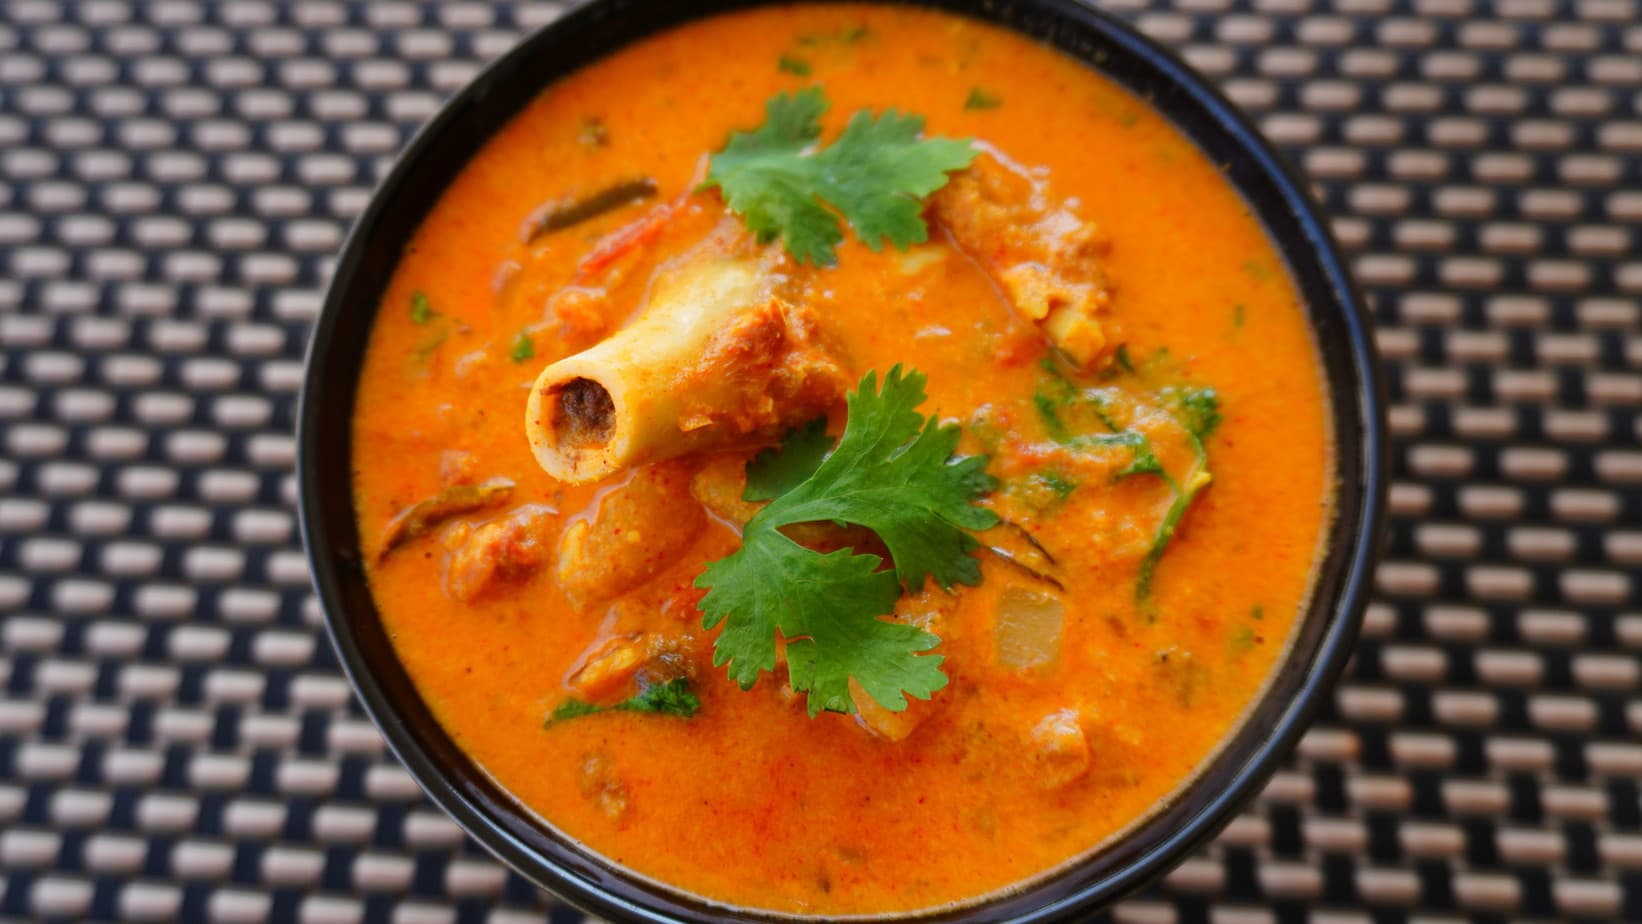 Asa Akira Cumshot - Mutton Kuzhambu | Mutton Kulambu recipe for Rice | Mutton Curry - Luv 4  Food N Travel